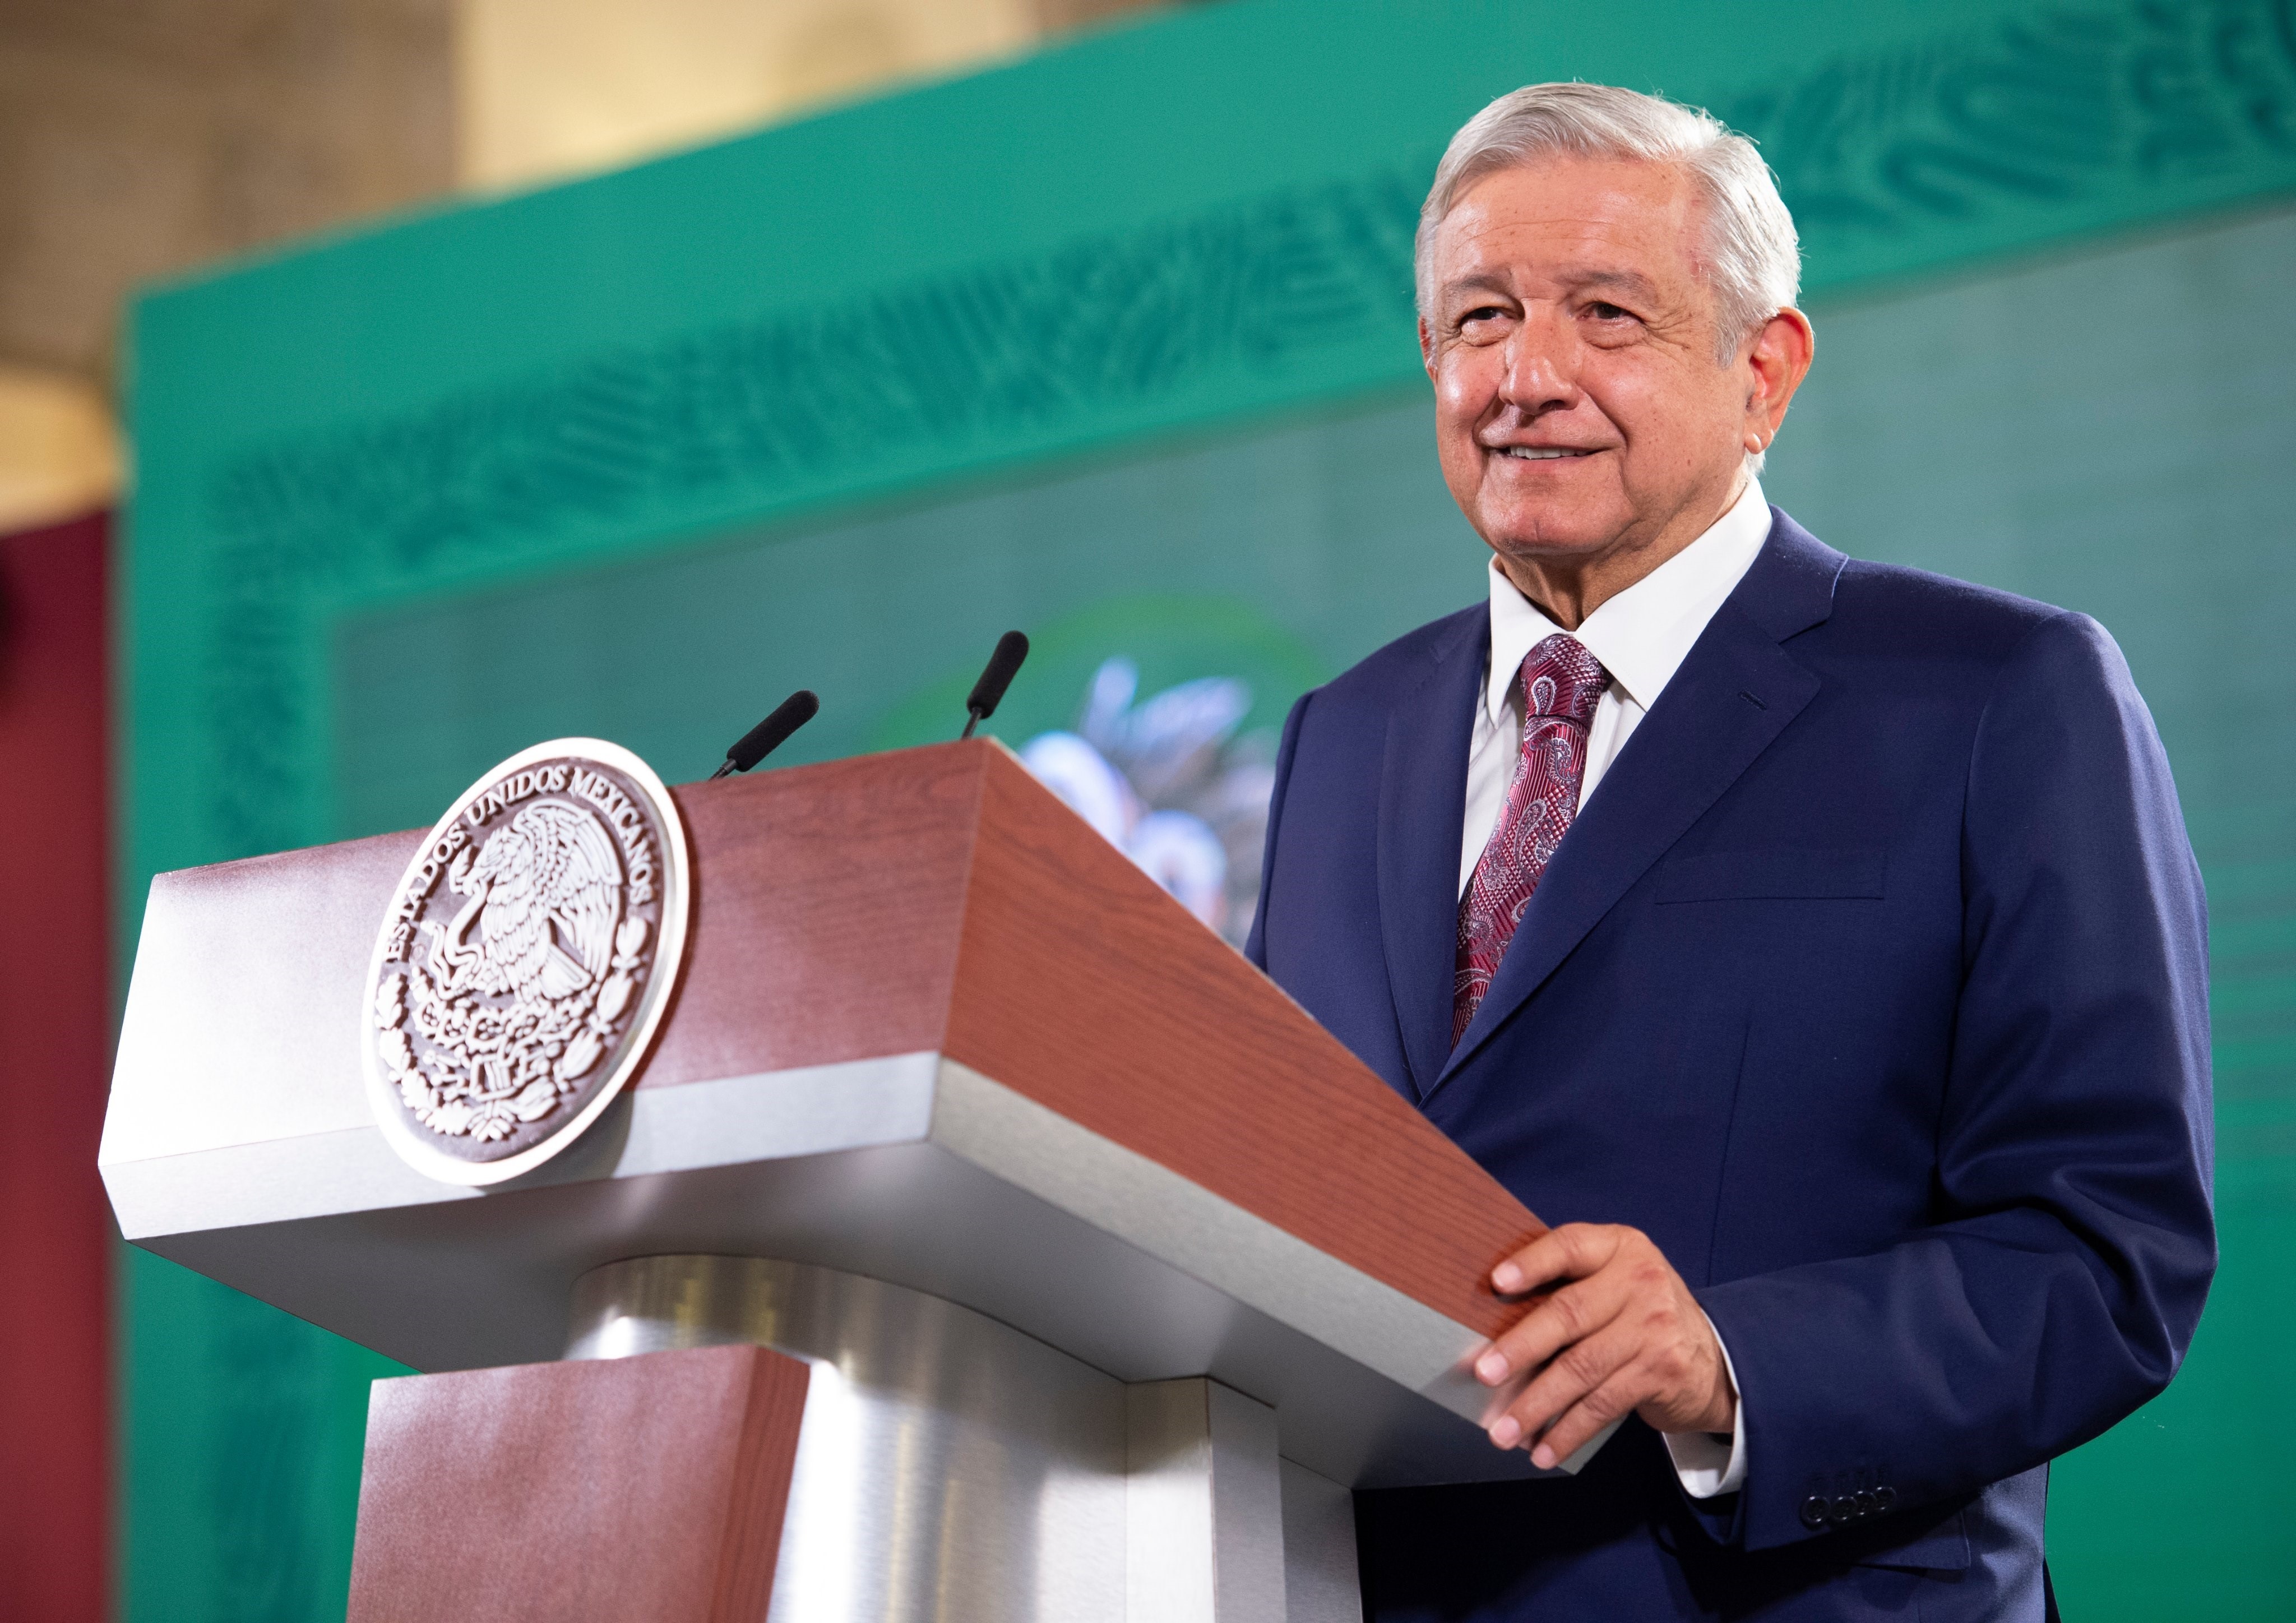 06-06-2021 El presidente de México, Andrés Manuel López Obrador
POLITICA CENTROAMÉRICA MÉXICO
PRESIDENCIA DE MÉXICO
